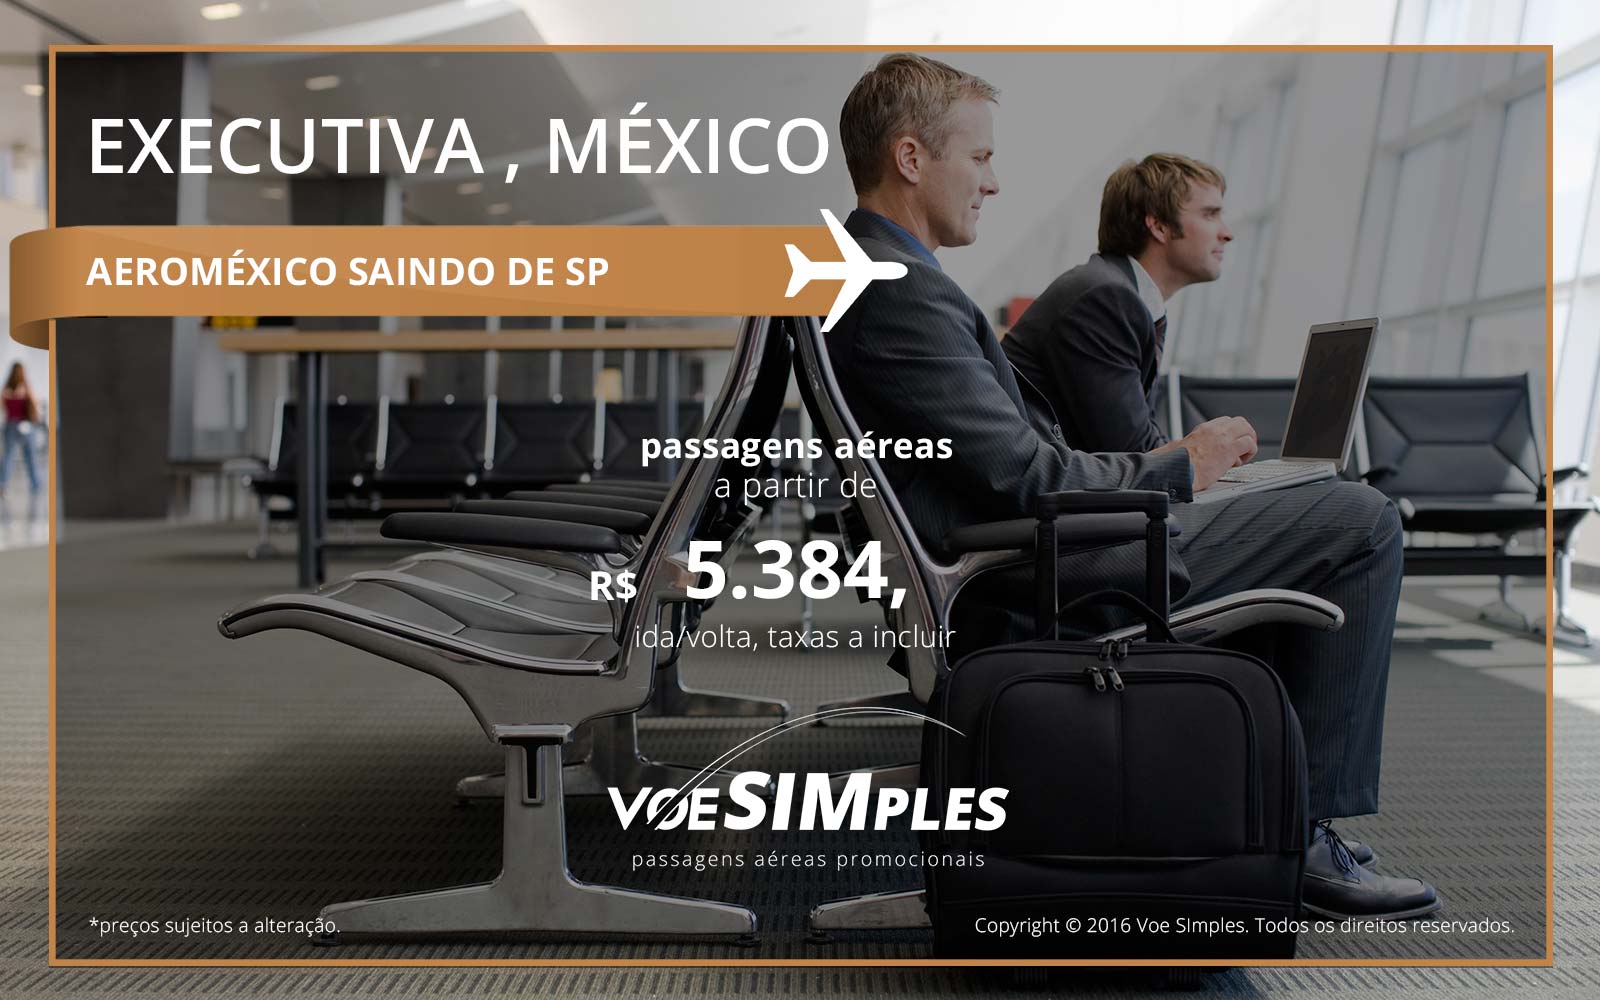 Passagem aérea Classe Executiva Aeroméxico para o México